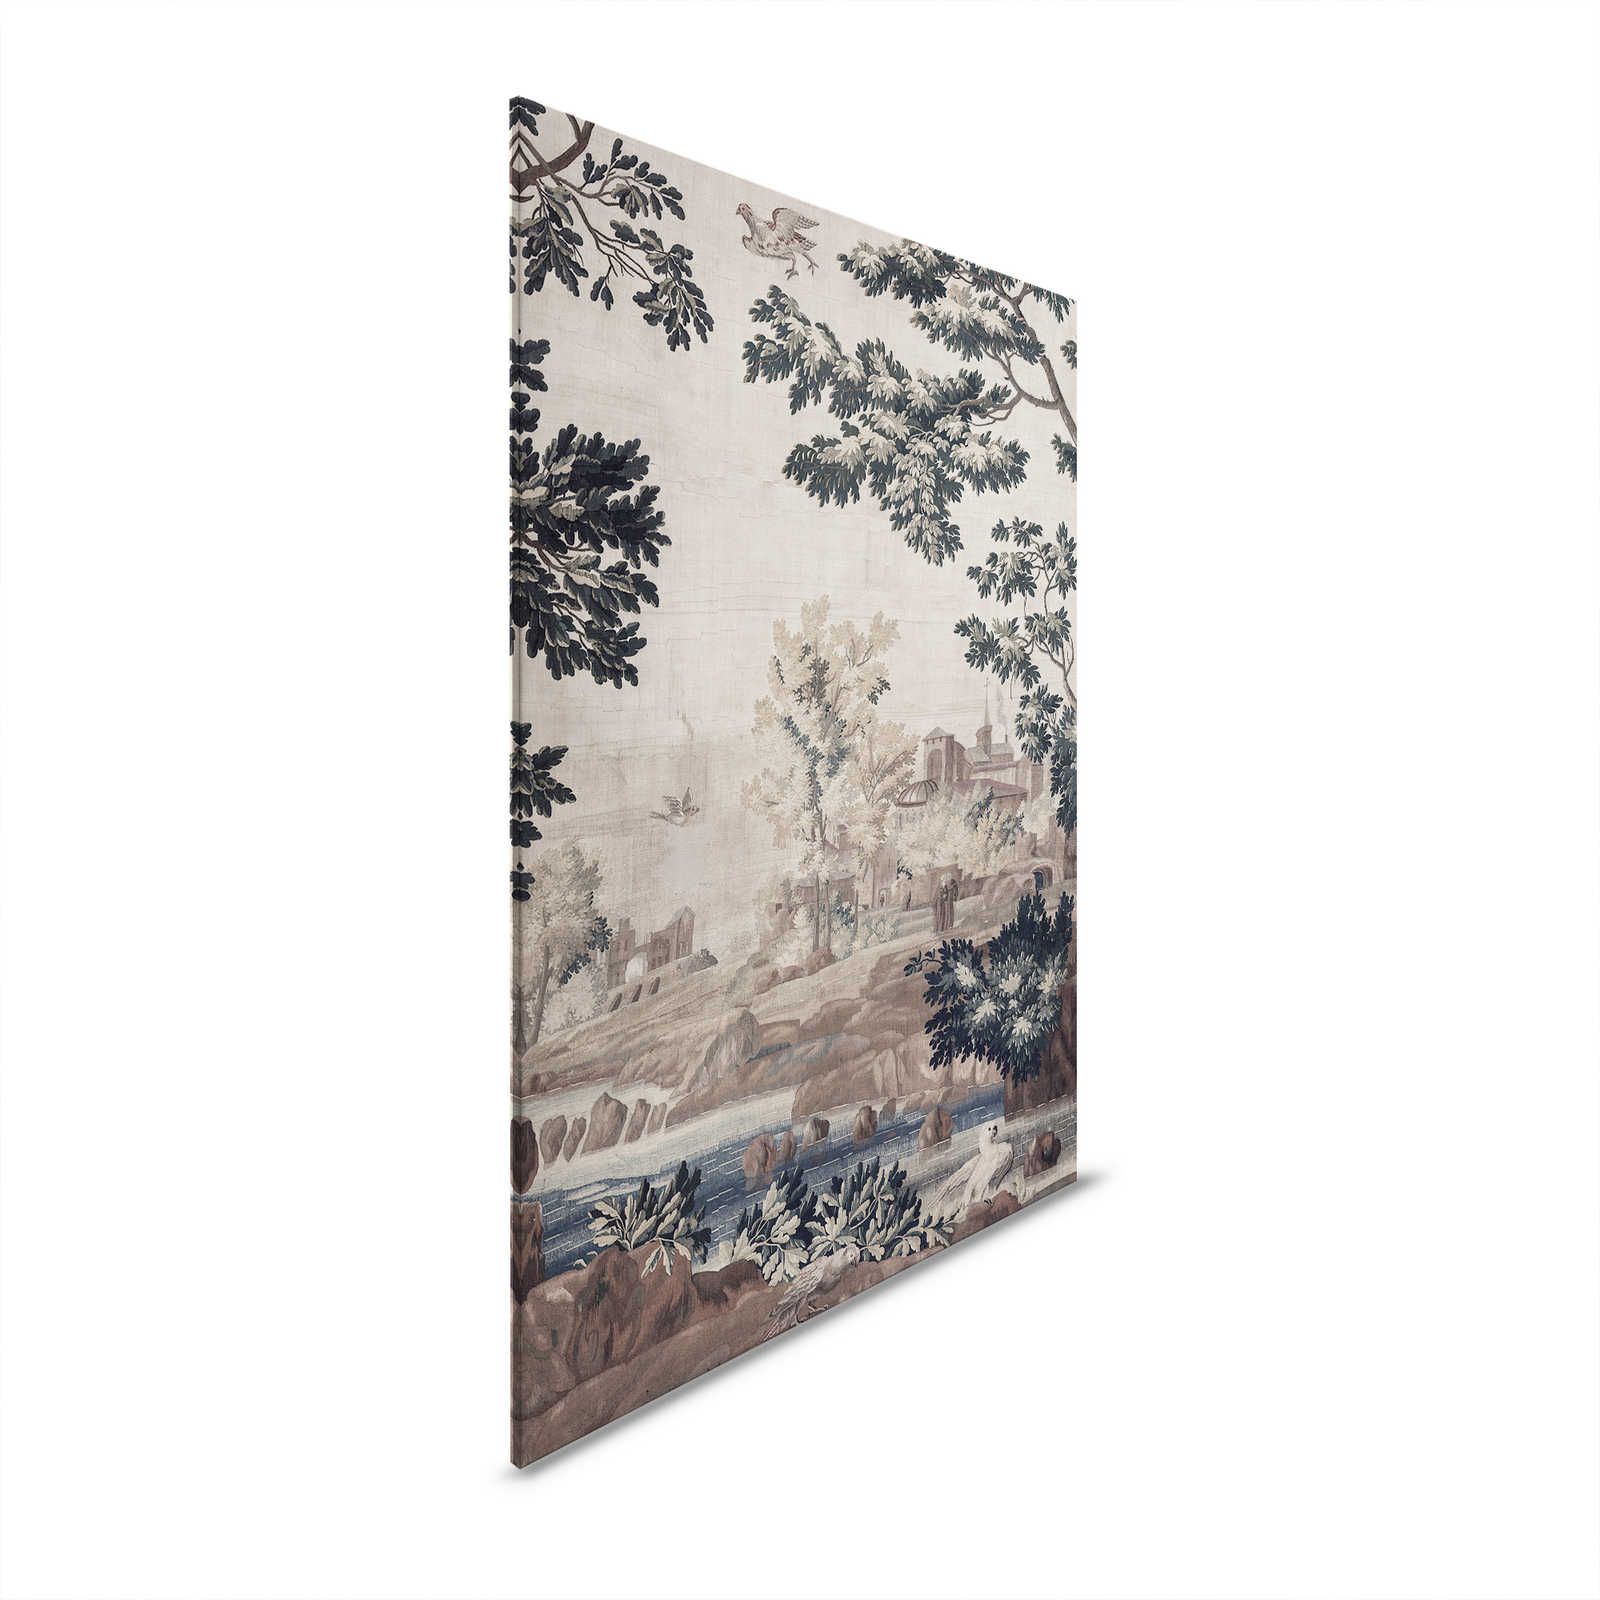 Gobelin Gallery 1 - Landschaft Leinwandbild historischer Wandteppich – 0,90 m x 0,60 m
